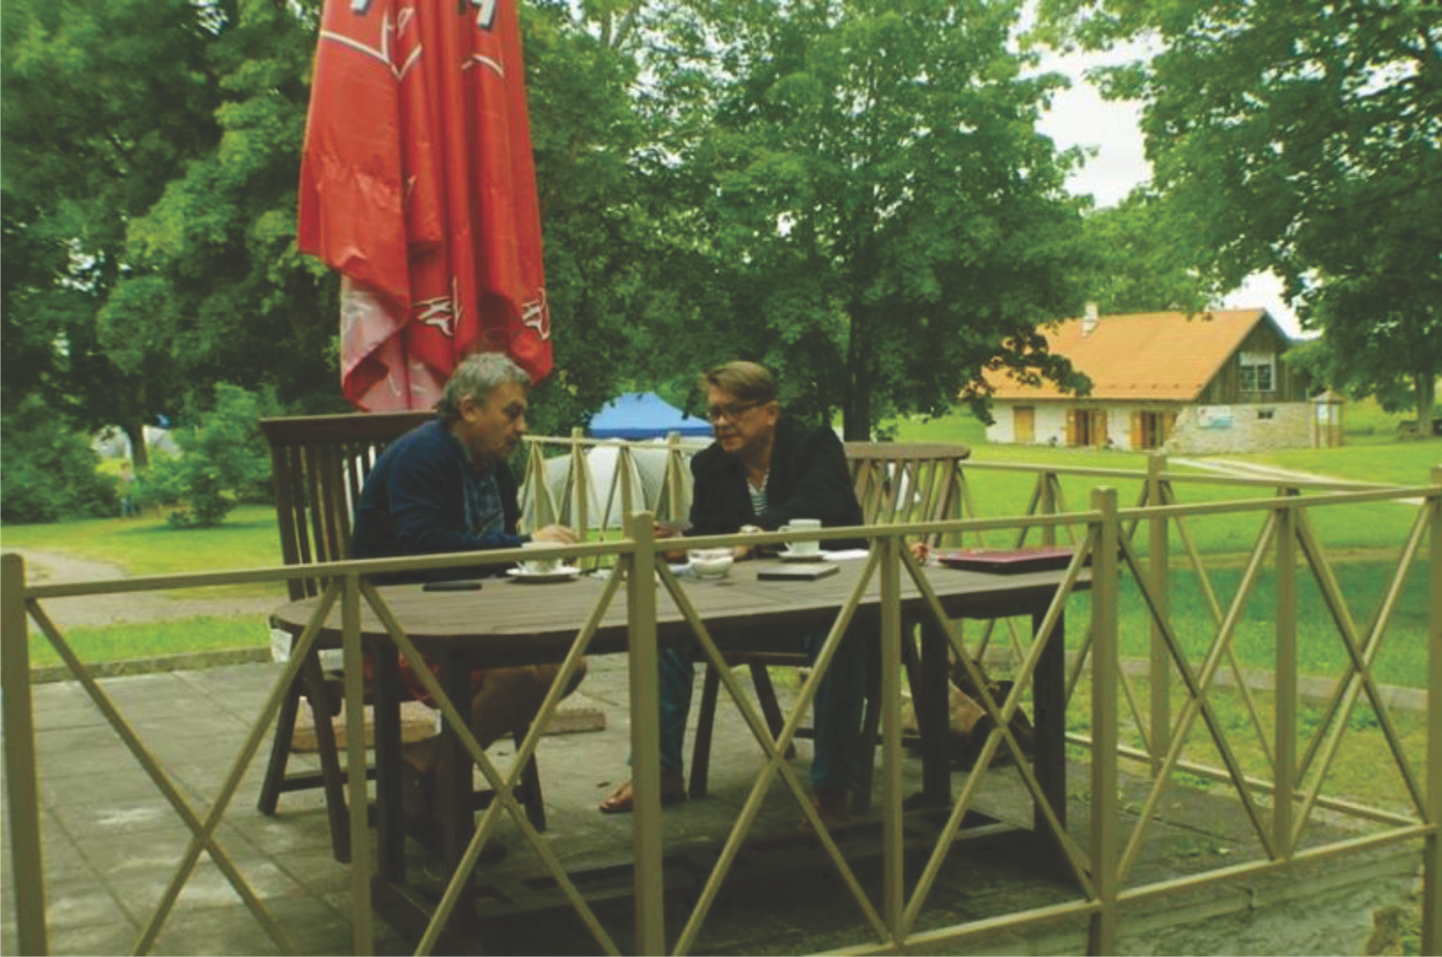 KULTUURIVAHETUS: Sergei Kazarnovski (vasakul) ja loo autor 2014. aastal maailma asju arutamas.